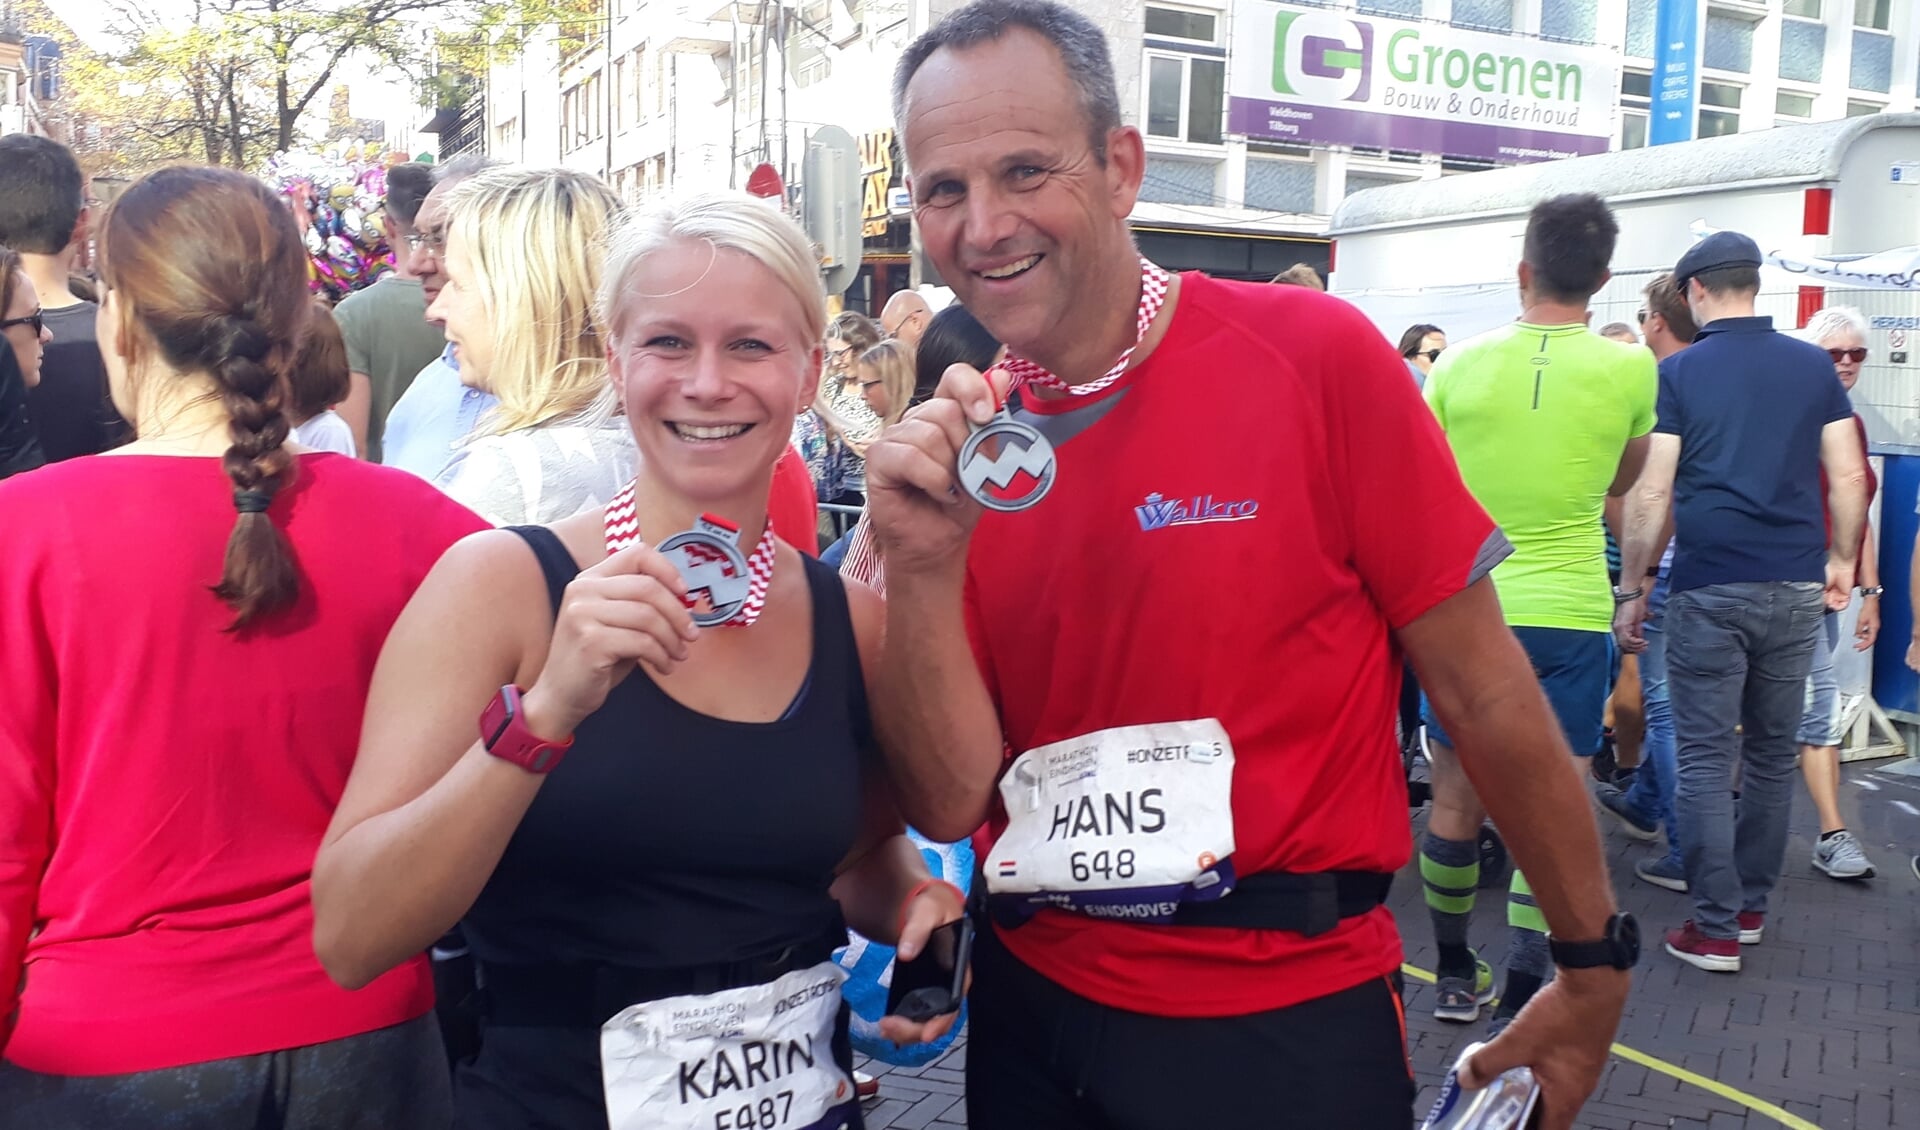 Debutanten op de marathon: Karin Bekkers en Hans Roestenburg